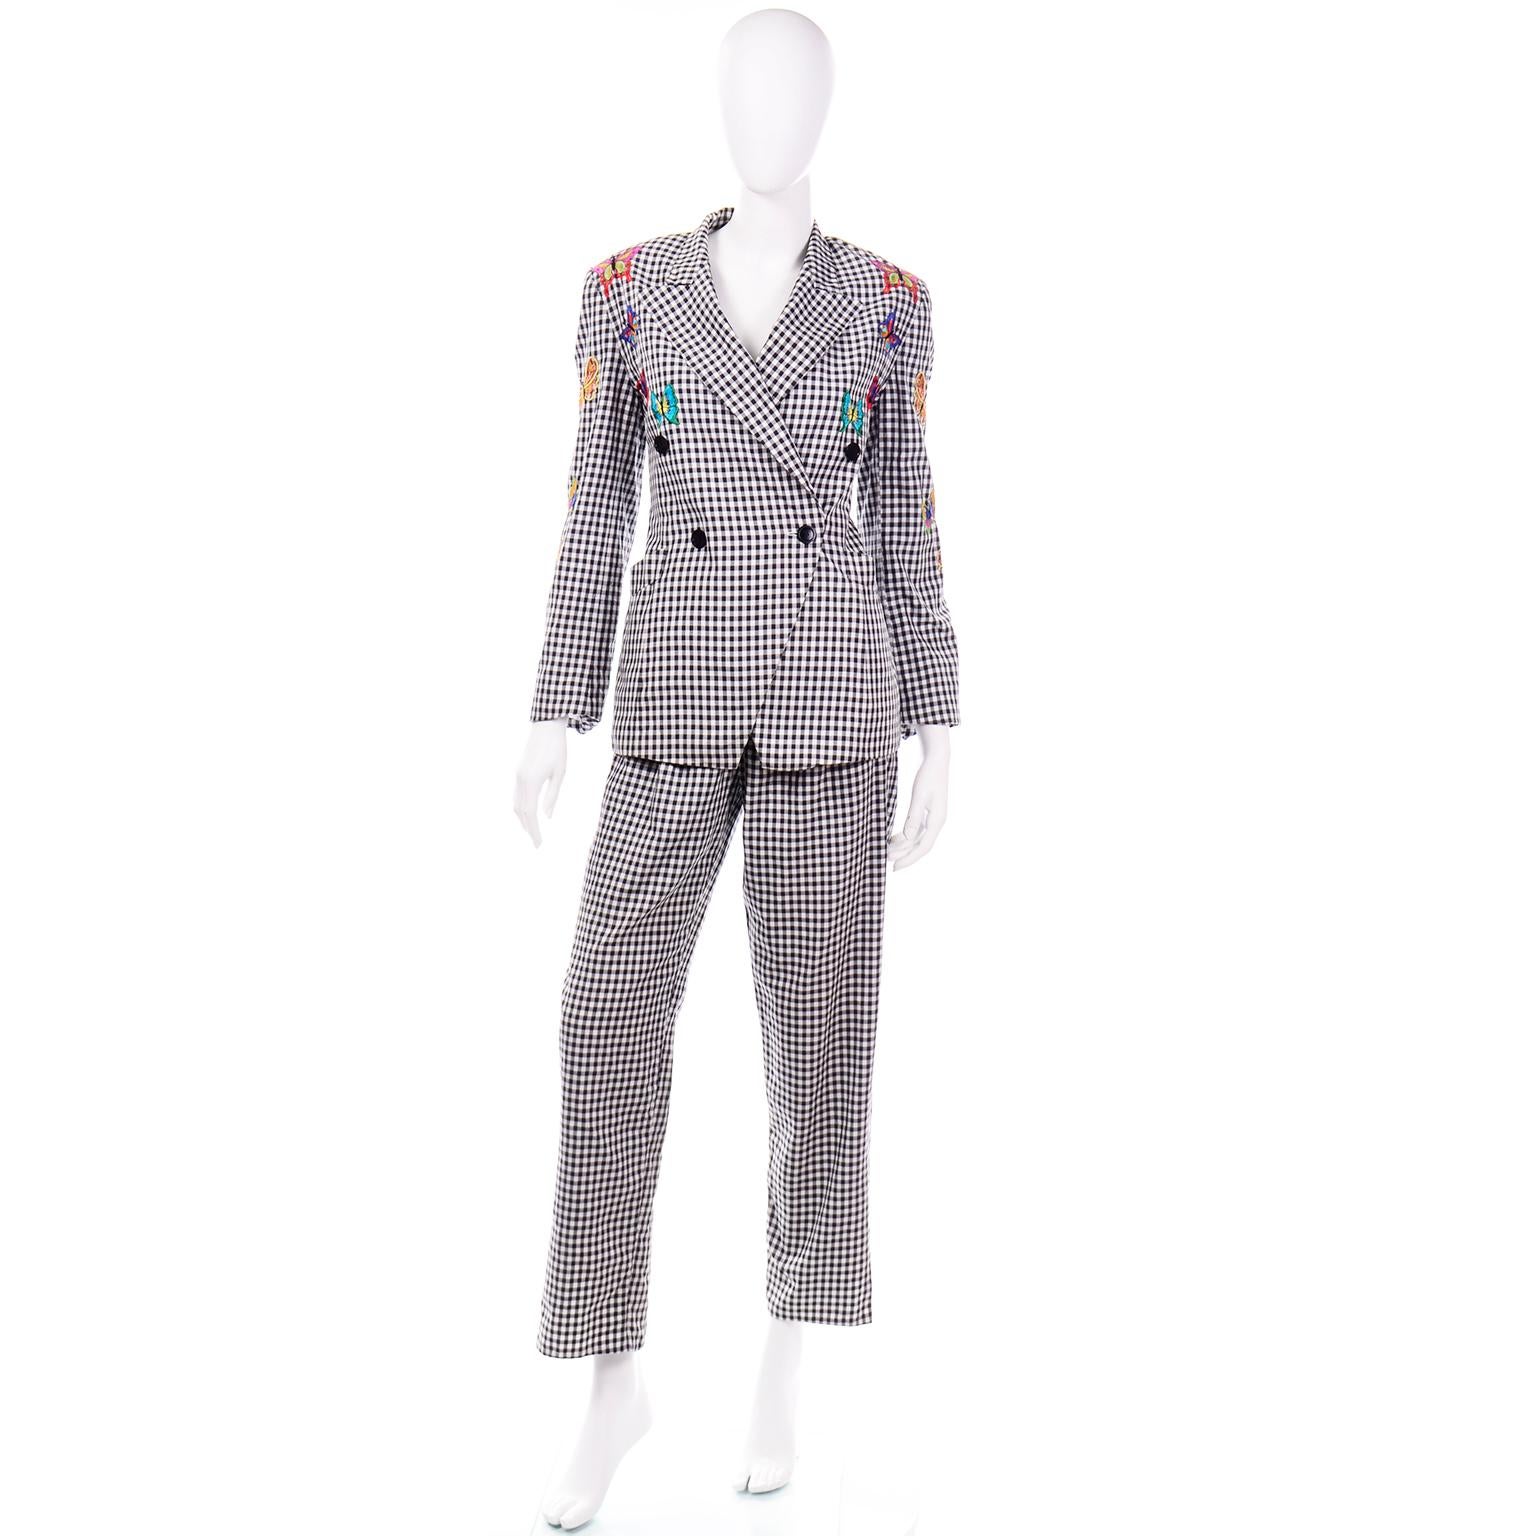 Dies ist ein Margaretha Ley für Escada 1980's schwarz und weiß Baumwolle Gingham Hosenanzug mit einem Blazer-Stil Jacke und ein Paar Hosen mit hoher Taille. Sie können diesen Anzug aufteilen und die Teile als Einzelteile mit bereits vorhandenen